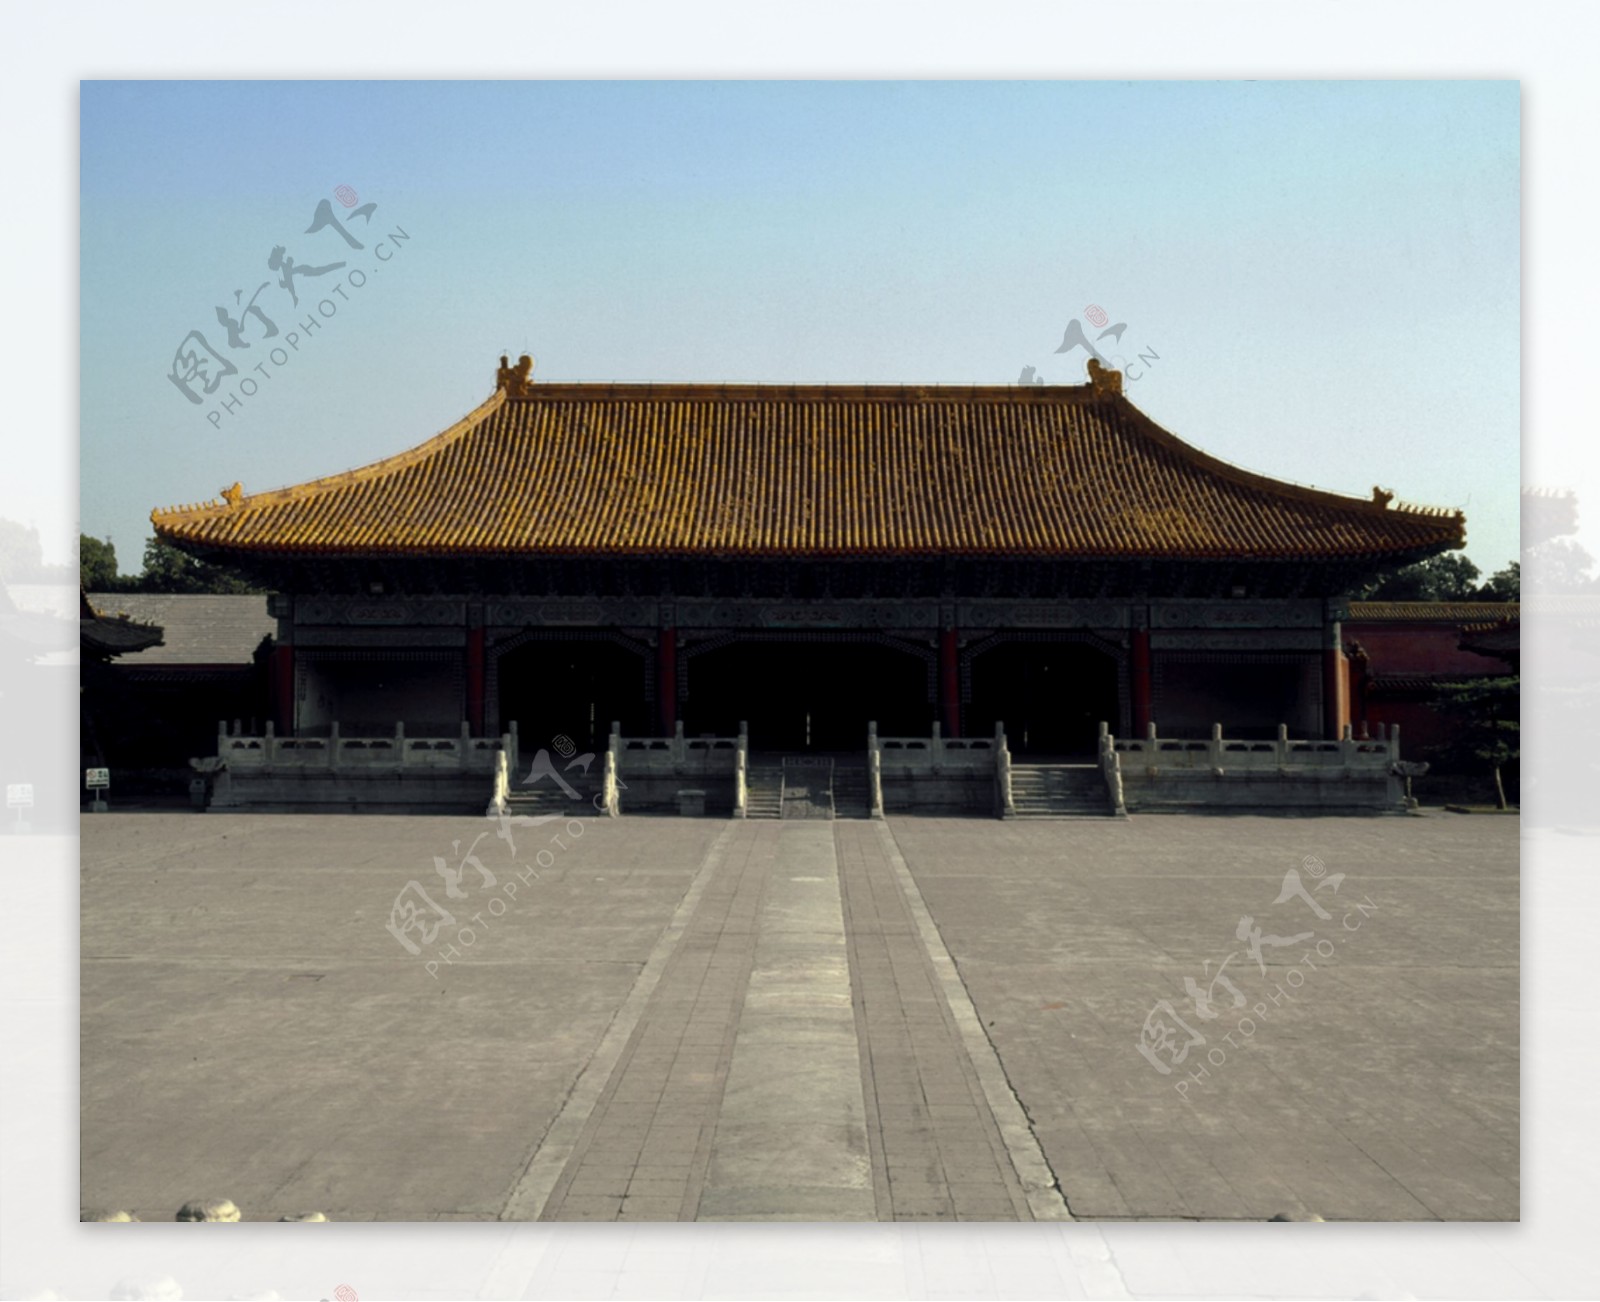 北京故宫大型图片明清古代宫殿建筑风格